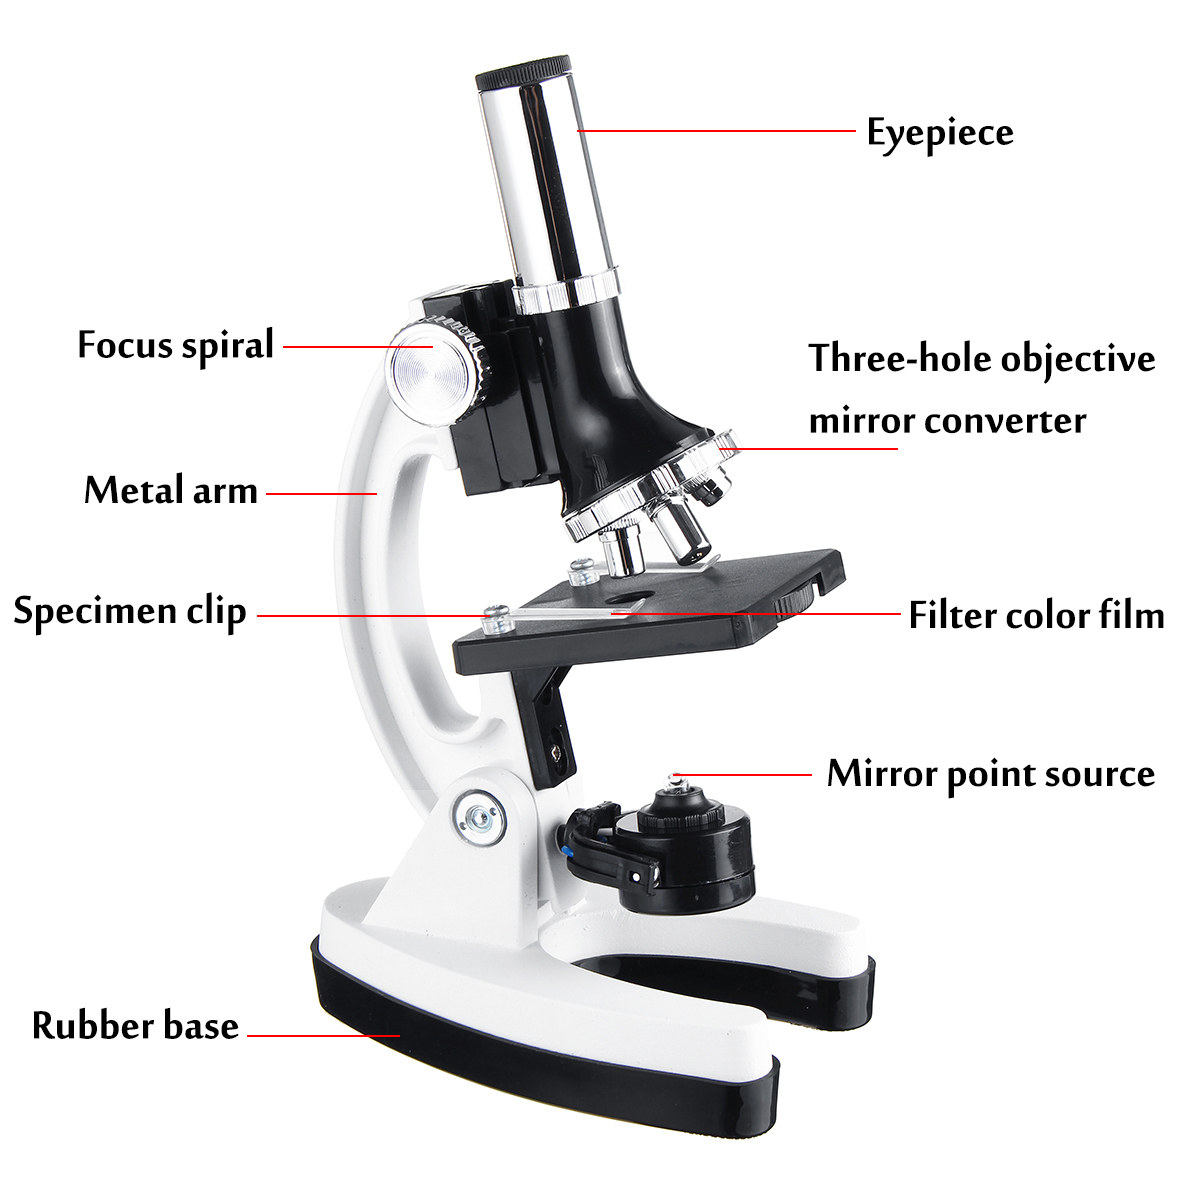 Le Microscope de Poche d'enfants Relient Le téléphone avec la lumière de LED pour Les Jouets d'équipement Yusheng Microscope Portable pour Enfants,Kit de Microscope portatif pour Enfants 200X 